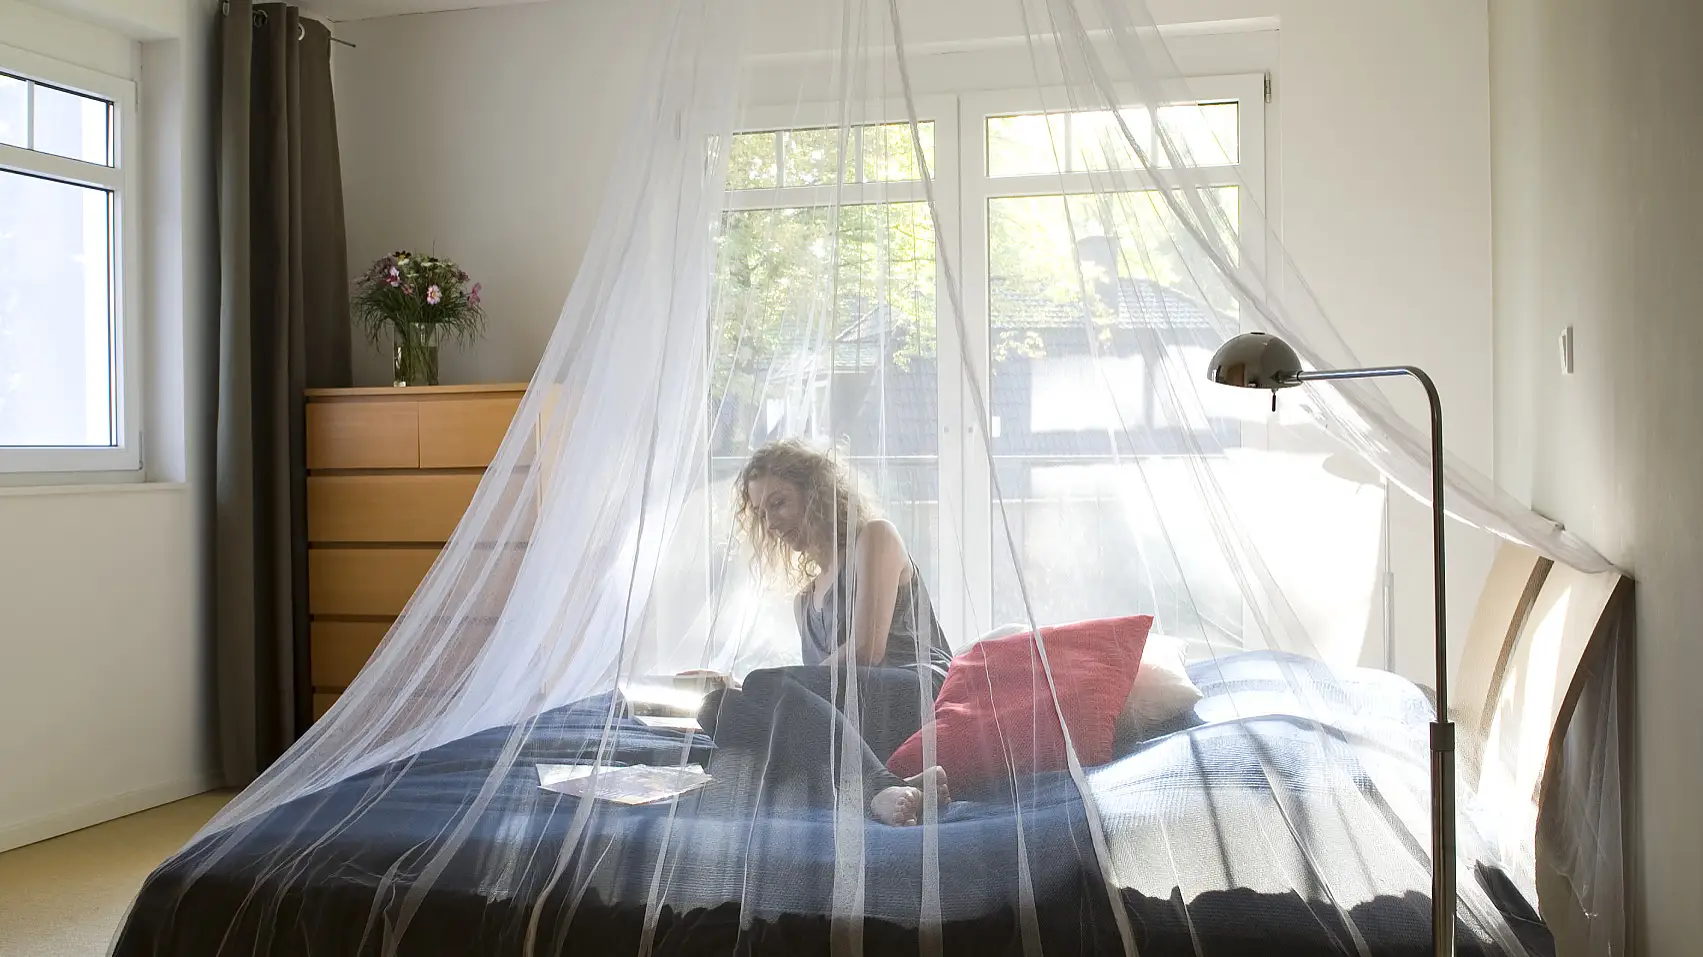 Moskytiéra zabezpečuje ochranu proti hmyzu a pripevňuje sa k stropu v spálni, či už ste u vás doma alebo na cestách.